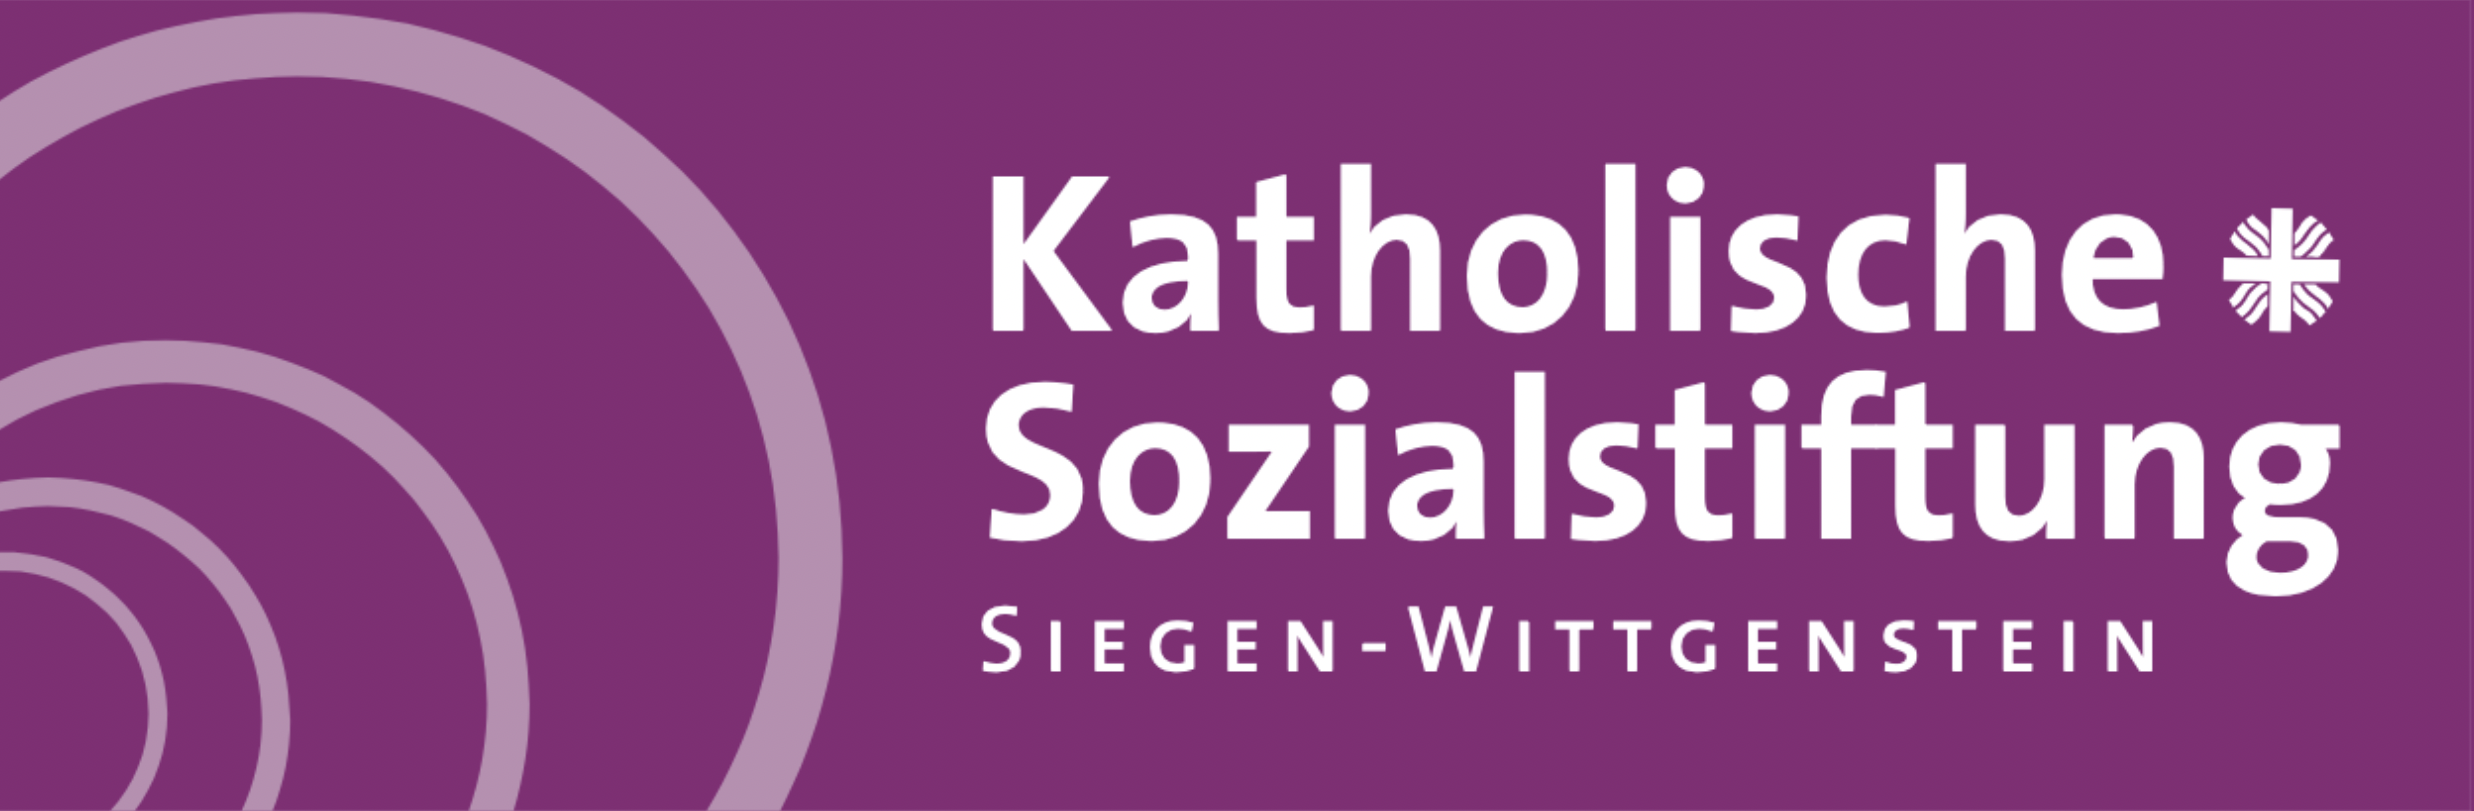 Katholische Sozialstiftung Siegen-Wittgenstein logo